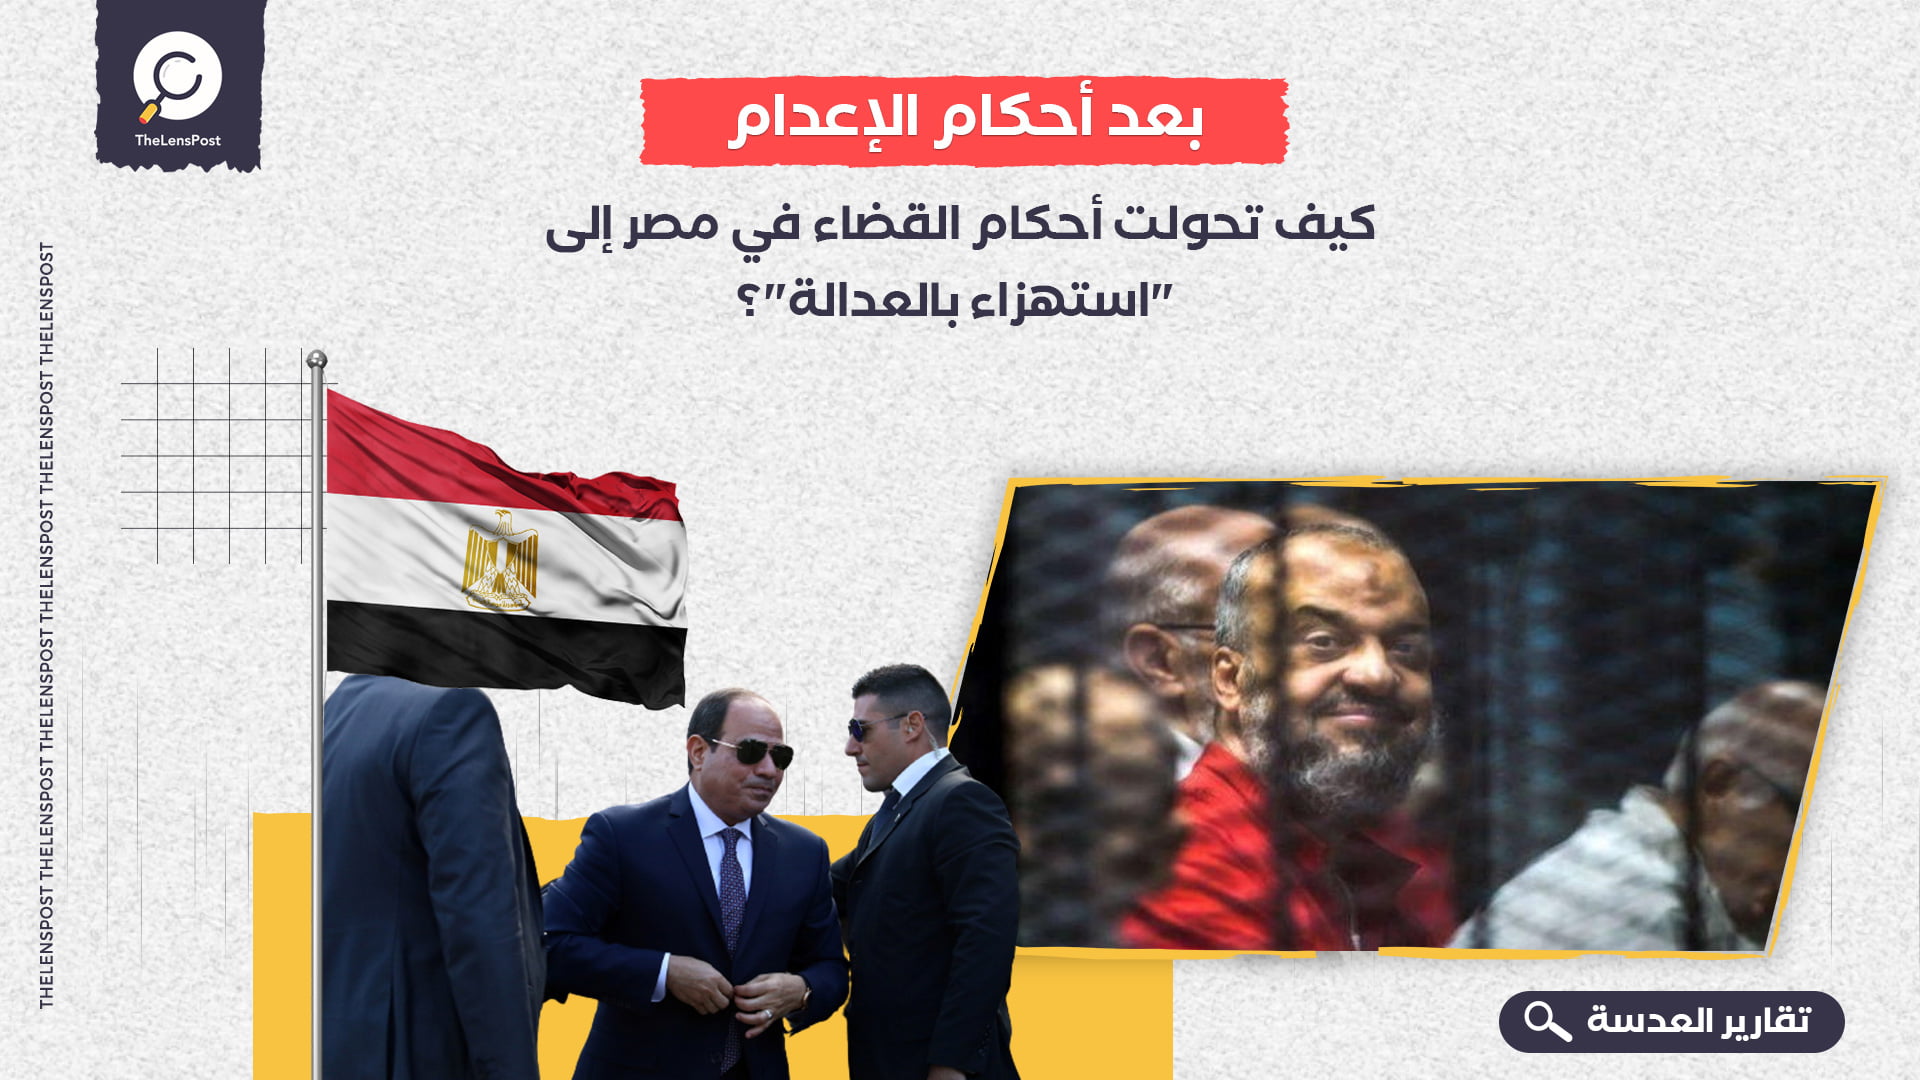 بعد-أحكام-الإعدام-كيف-تحولت-أحكام-القضاء-في-مصر-إلى-"استهزاء-بالعدالة"؟